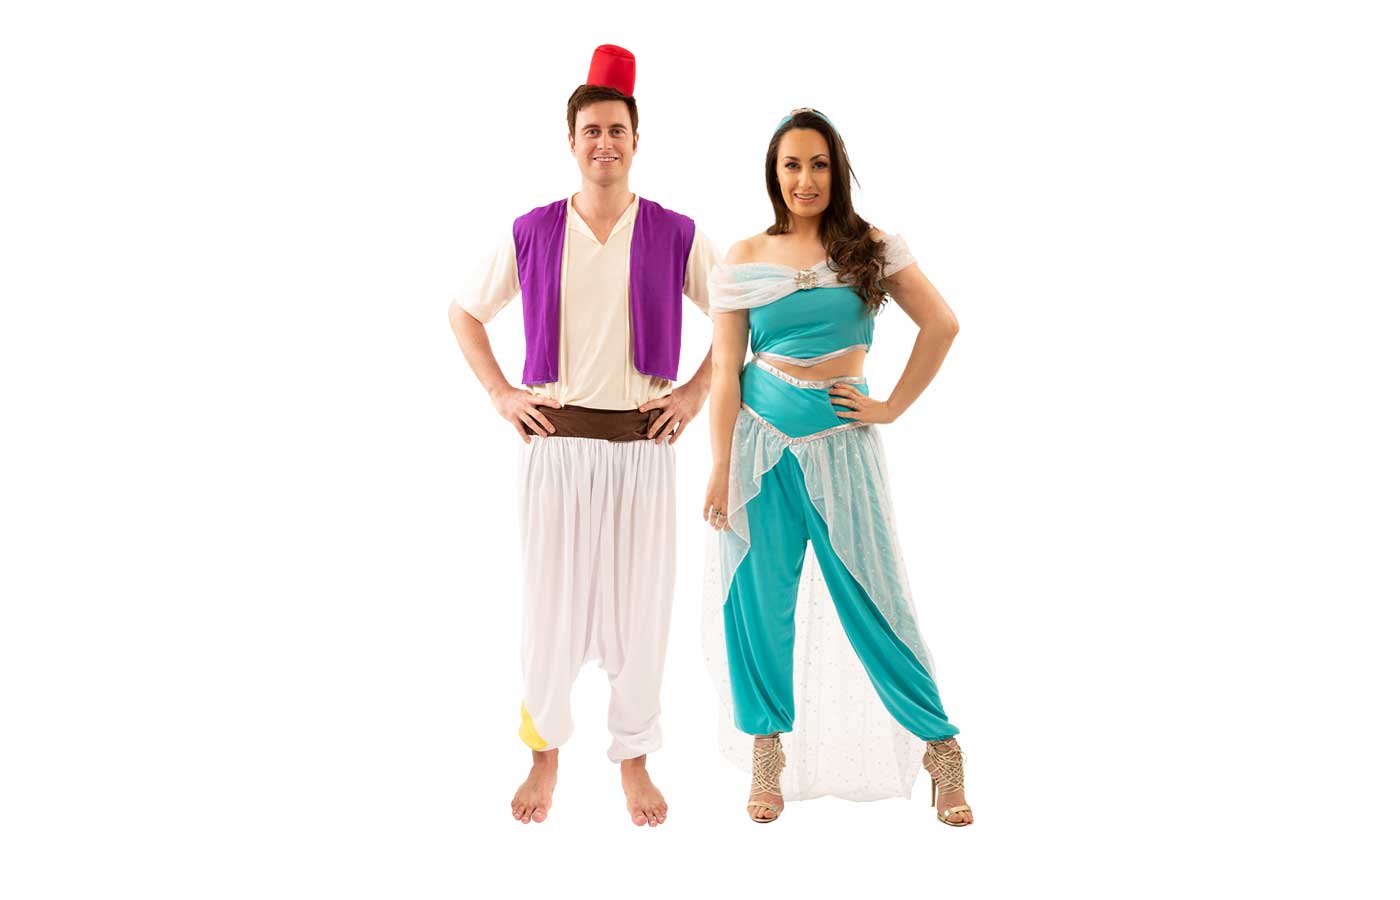 aladdin and princess jasmine costumes